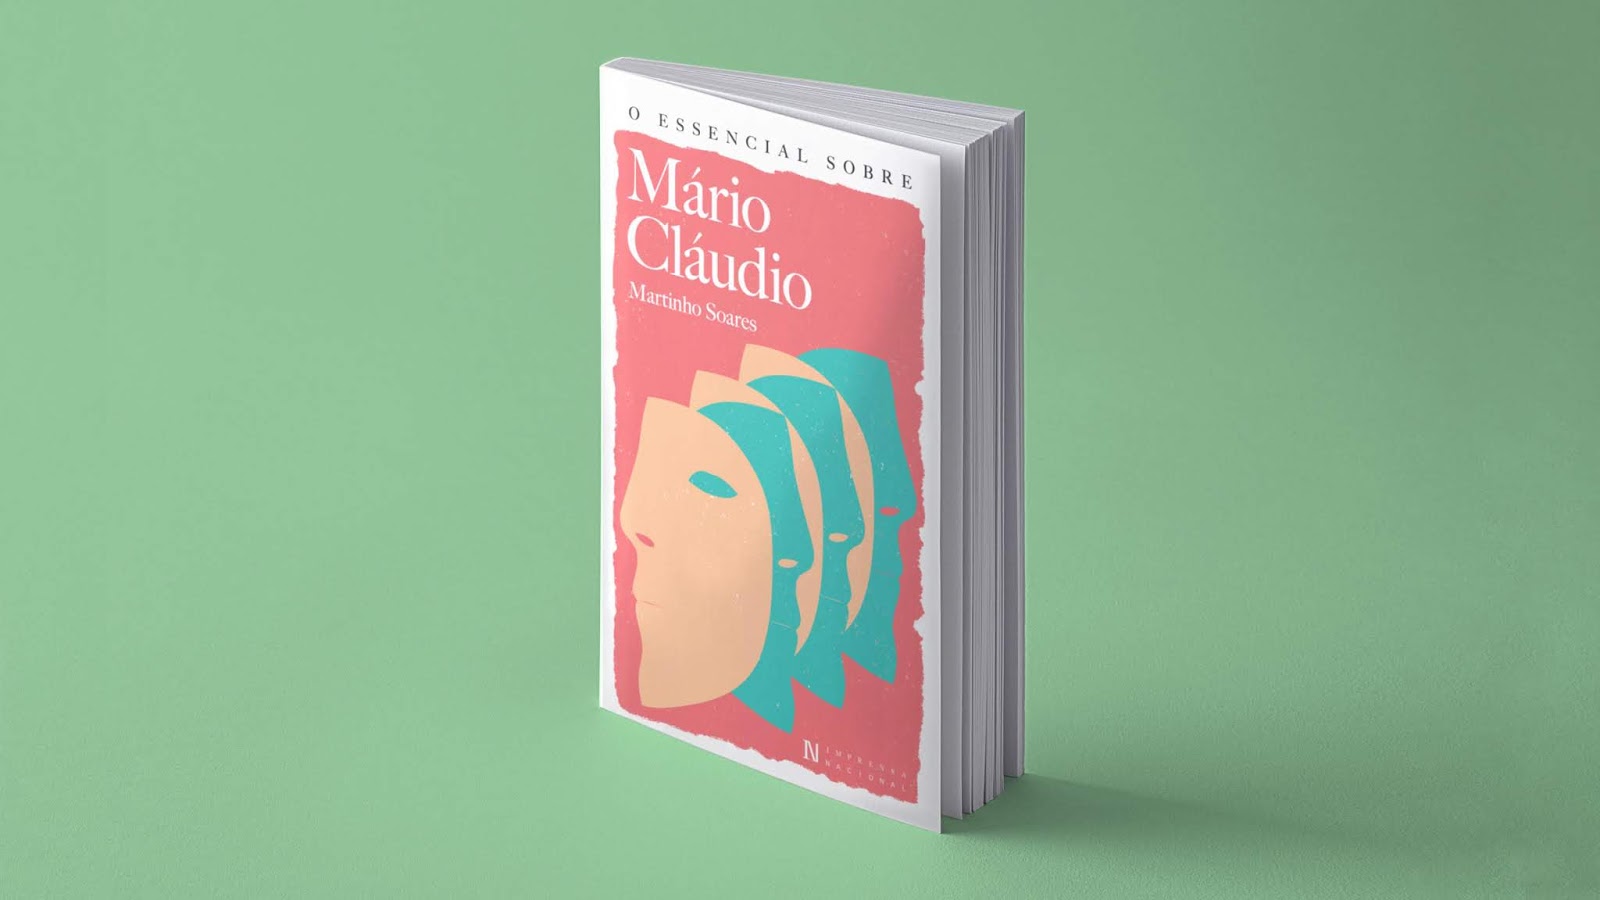 Novidade | O Essencial Sobre Mário Cláudio, de Martinho Soares